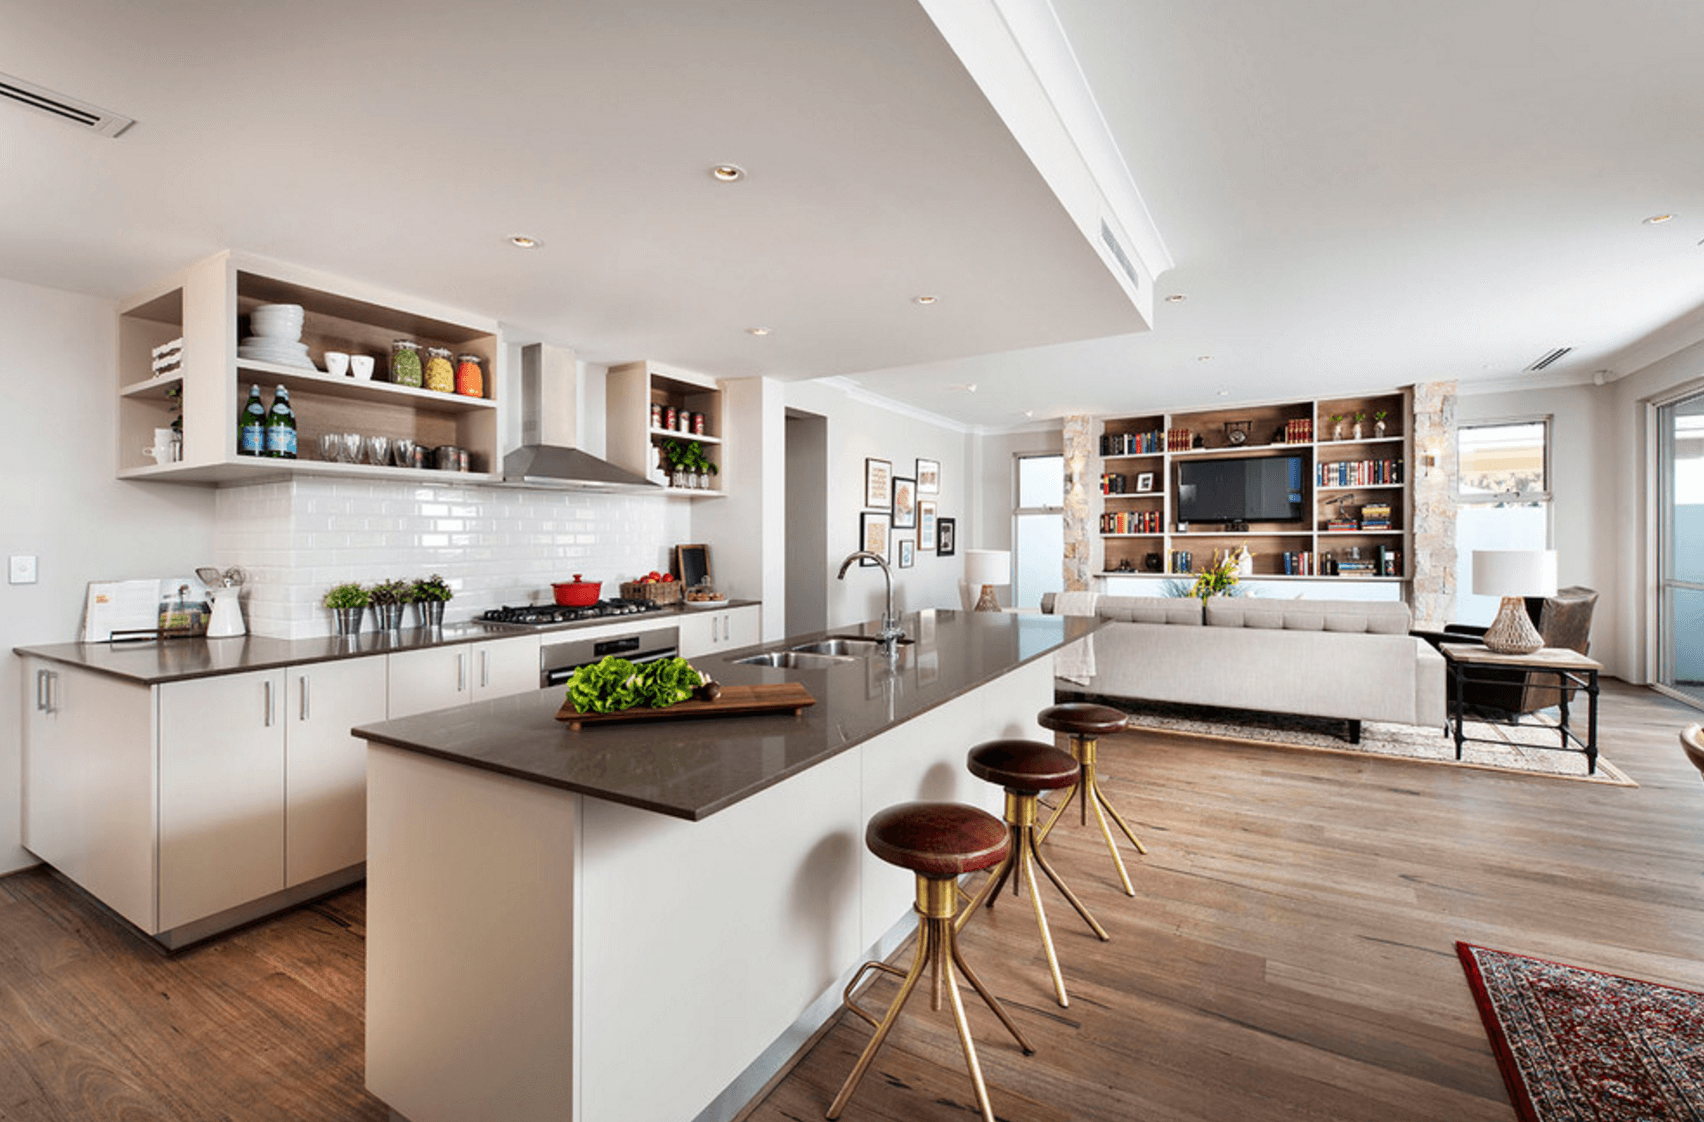 Кухня-гостиная: обзор лучших дизайн-проектов по объединению интерьера (150 фото)